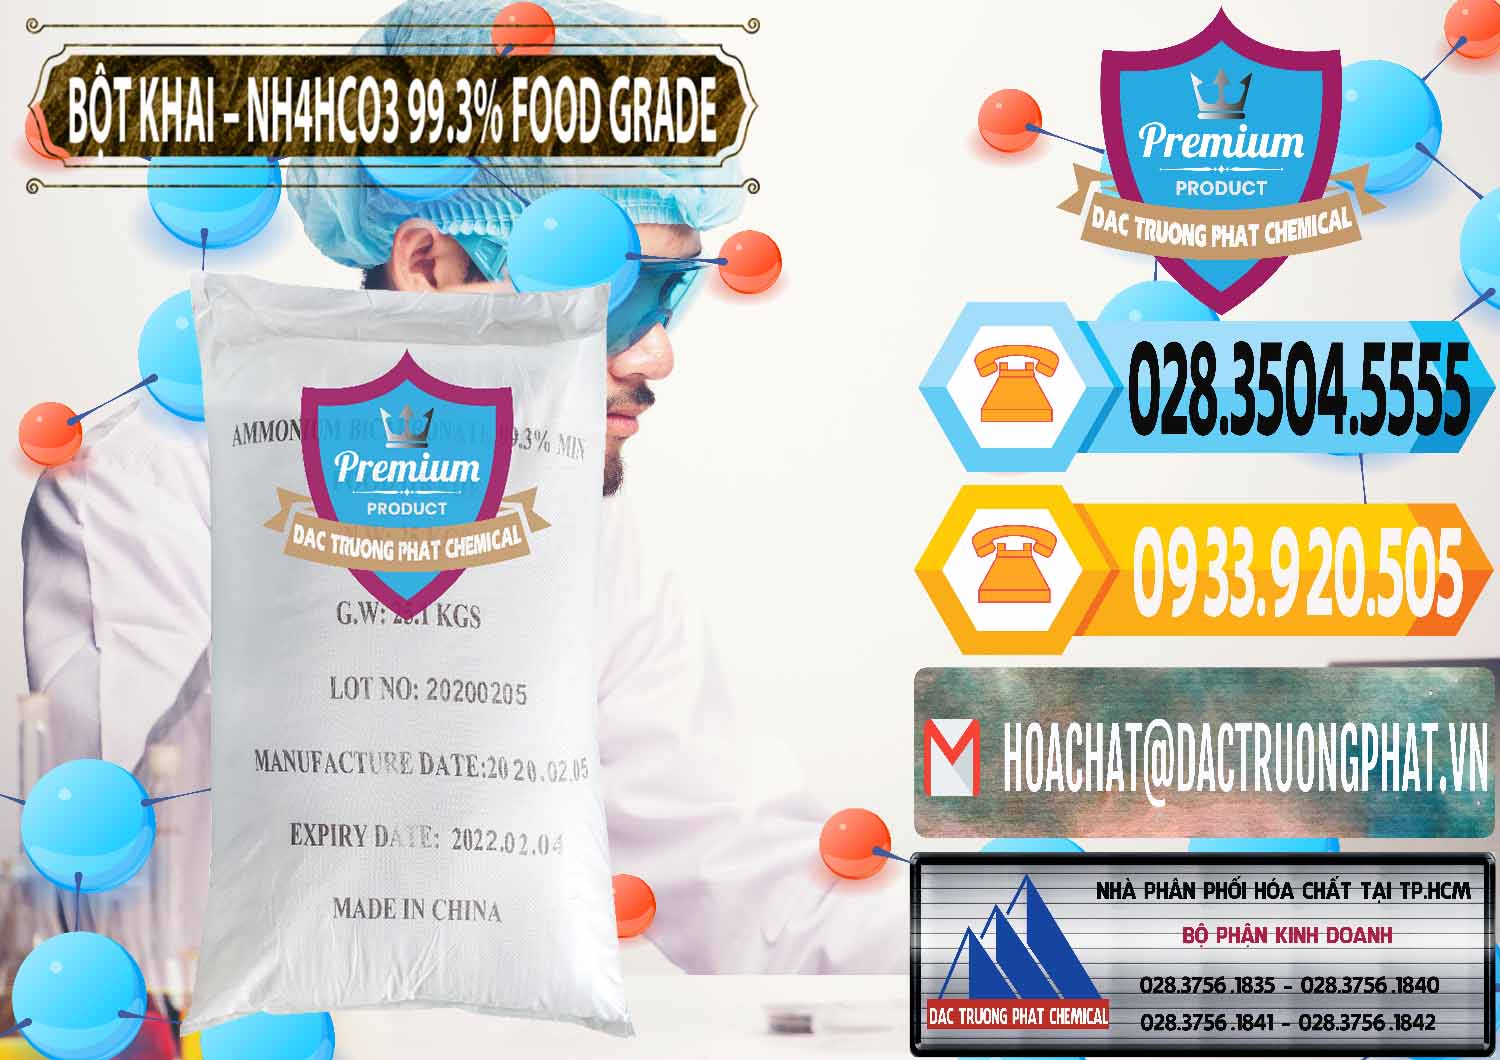 Cty chuyên bán & cung ứng Ammonium Bicarbonate – Bột Khai NH4HCO3 Food Grade Trung Quốc China - 0019 - Công ty chuyên cung cấp - bán hóa chất tại TP.HCM - hoachattayrua.net